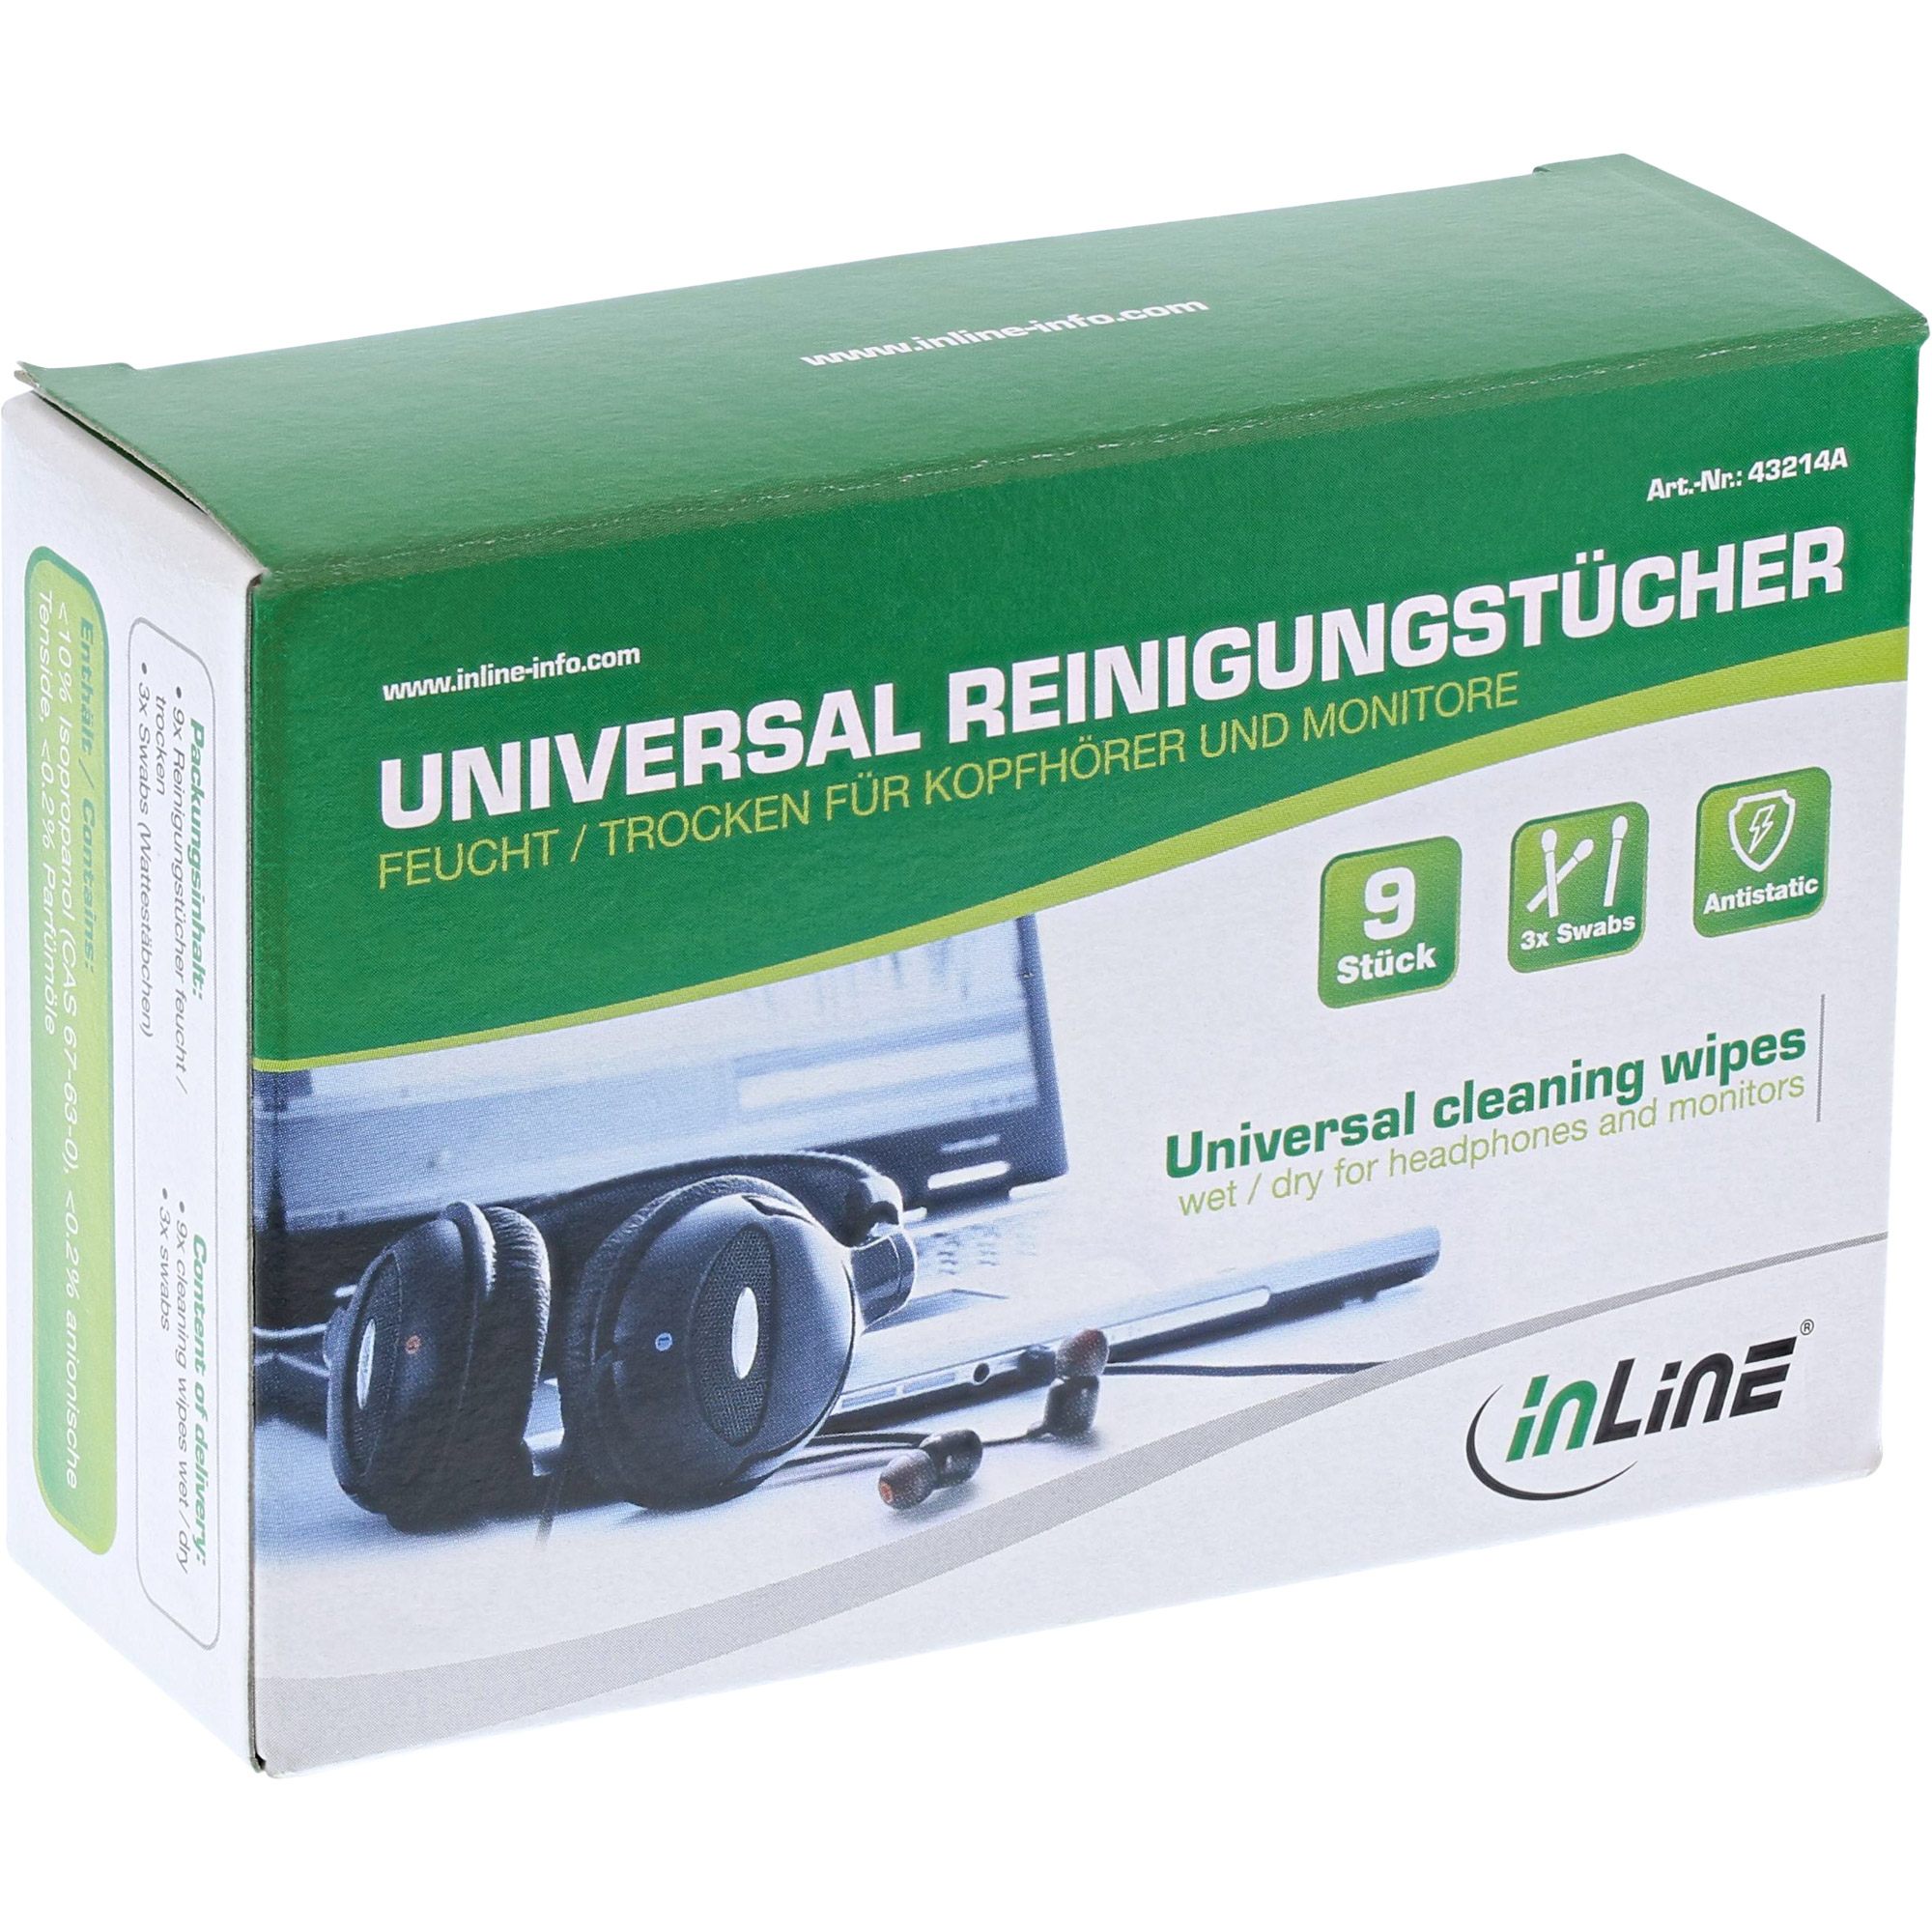 InLine® Universal Reinigungstücher nass/trocken für Kopfhörer und Monitore